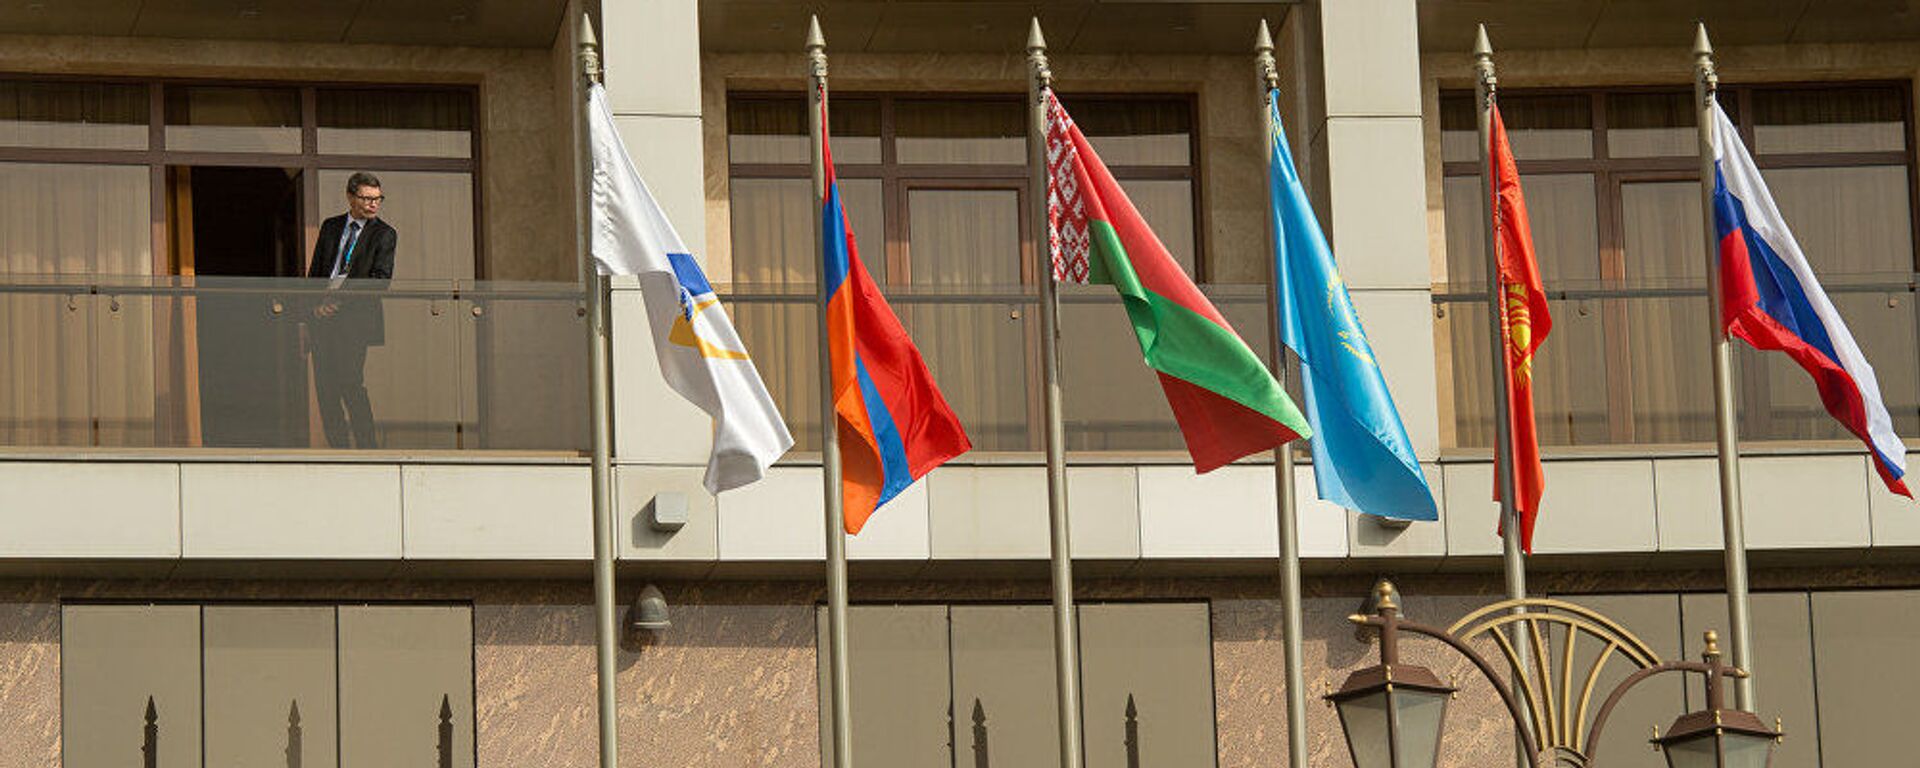 Саммит ЕАЭС: флаги стран-участниц - Sputnik Армения, 1920, 21.06.2021